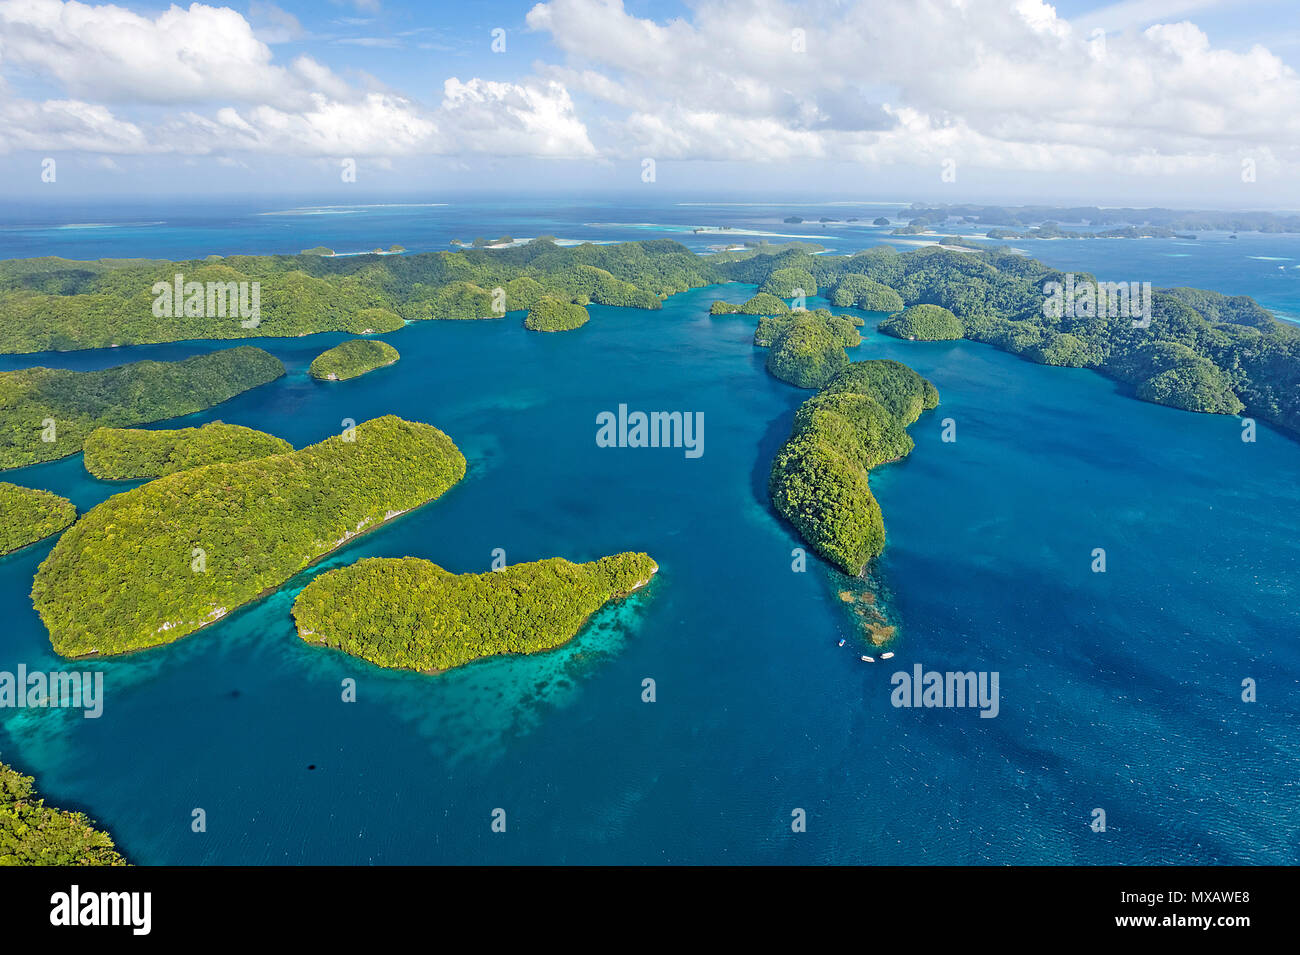 Luftaufnahme von Palau, Mikronesien, Asien | Luftaufnahme von Palau, Mikronesien, Asien Stockfoto